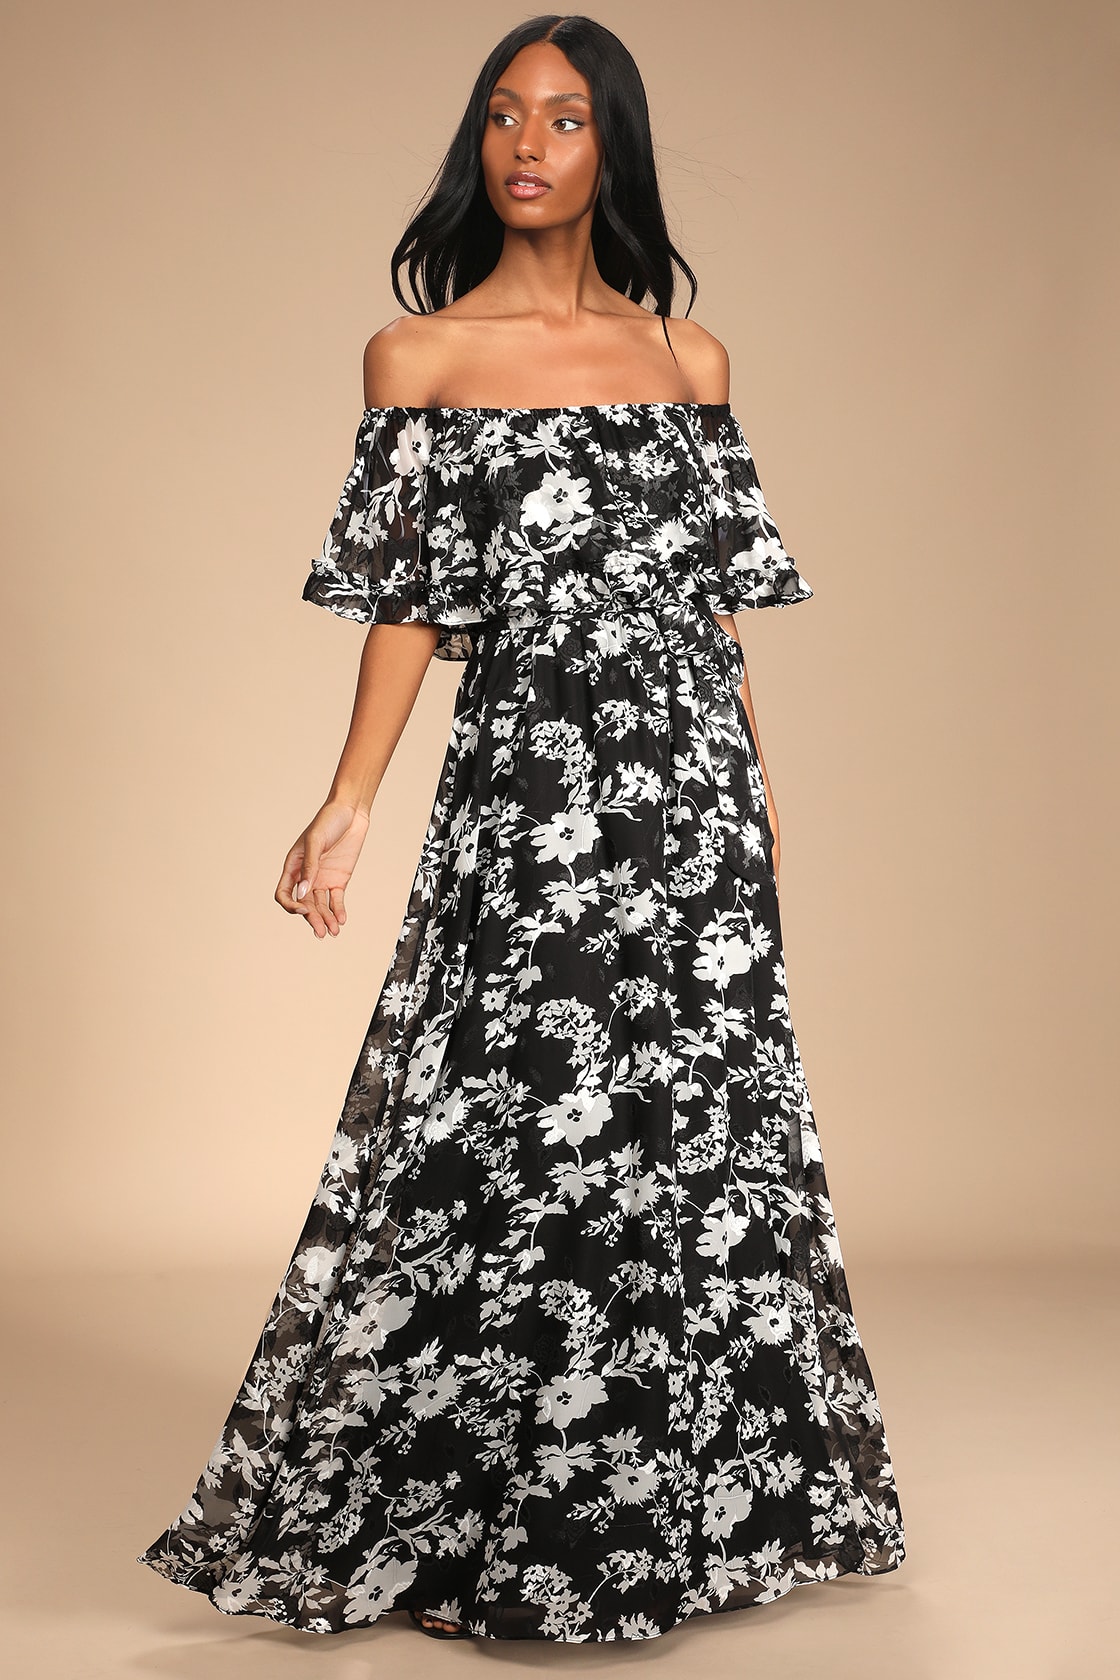 Black Floral Print Dress - OTS Maxi Dress - OTS Ruffled Dress - Lulus